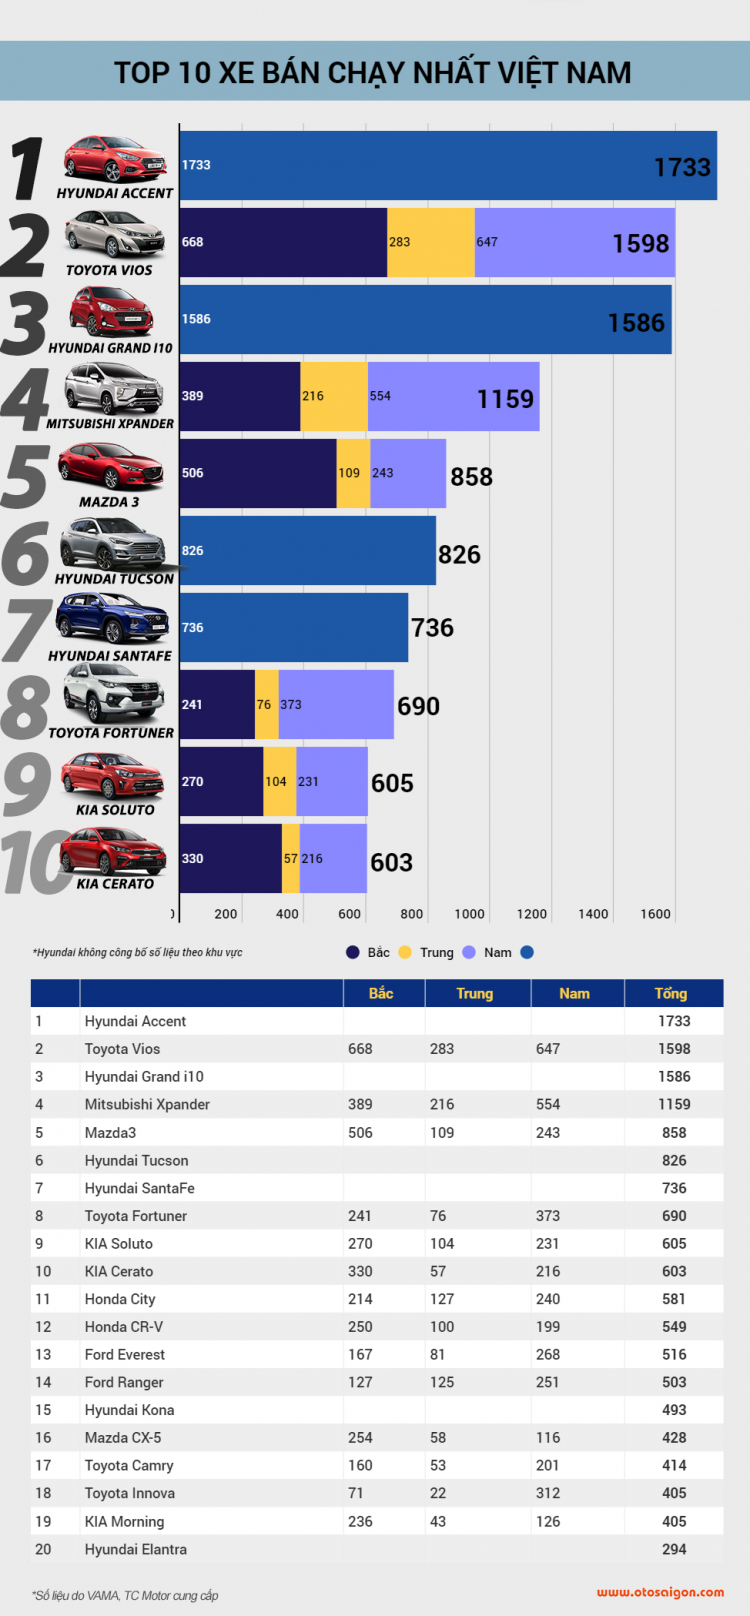 [Infographic] Top 10 xe bán chạy tại Việt Nam tháng 1/2020: Accent vượt mặt Vios